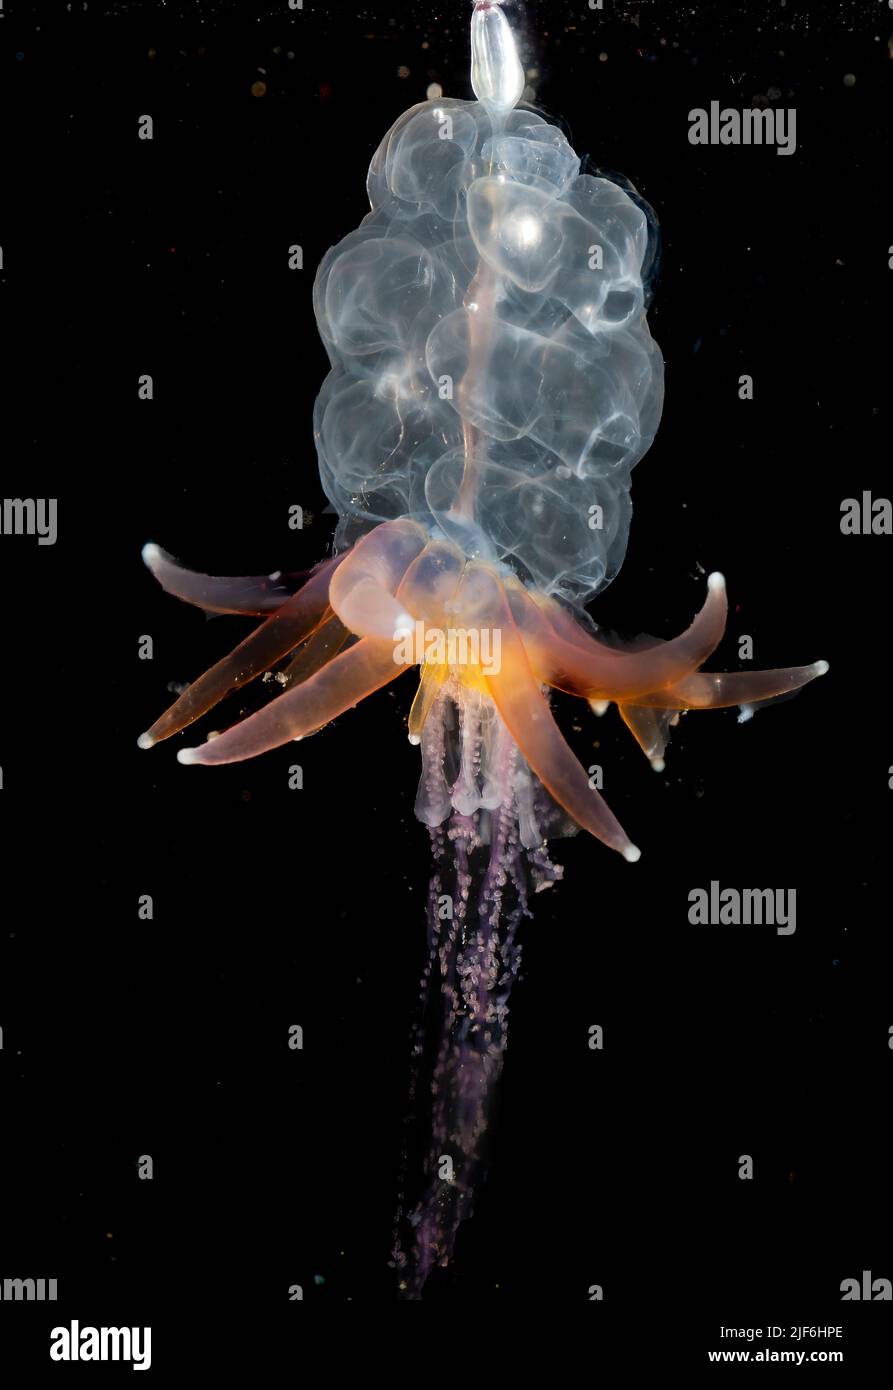 El sifonofor conocido como medusa de falda de Hula (Physophora hydrostatica), recolectó de las aguas superficiales de Hidra, al sudoeste de Noruega a finales de enero Foto de stock